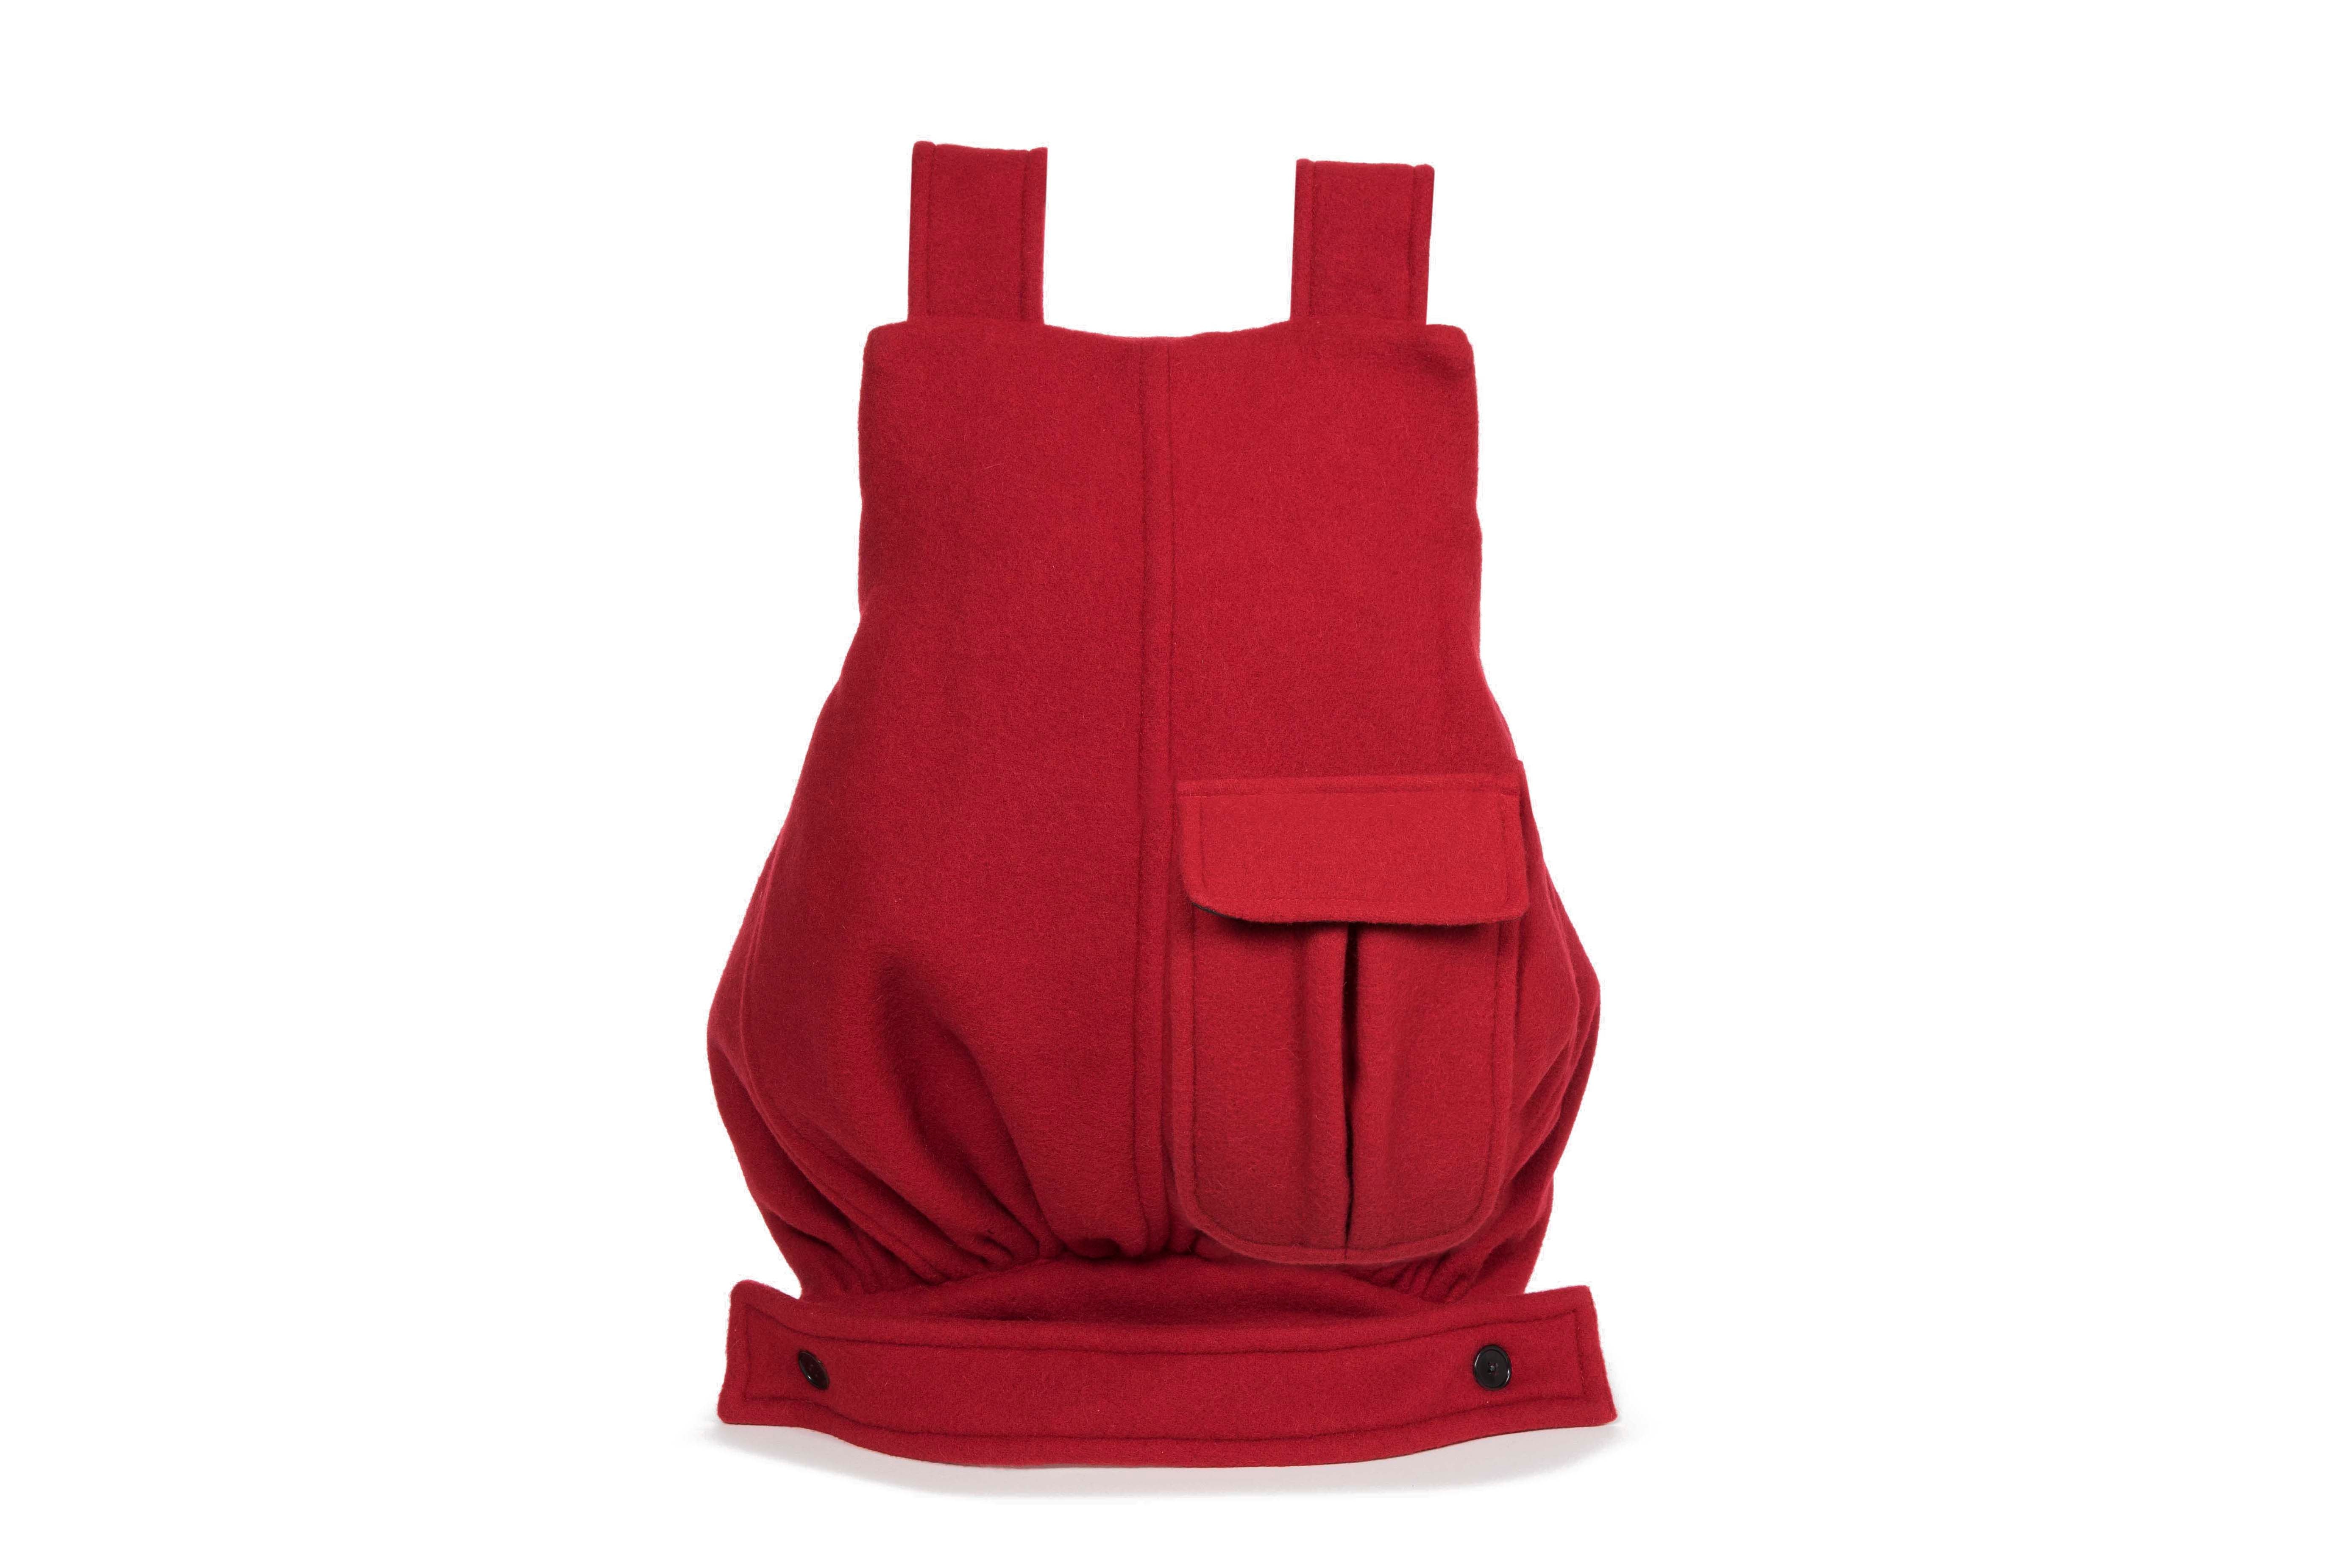 Raf Simons x Eastpak Fall/Winter 18 Collection Backpacks Bag